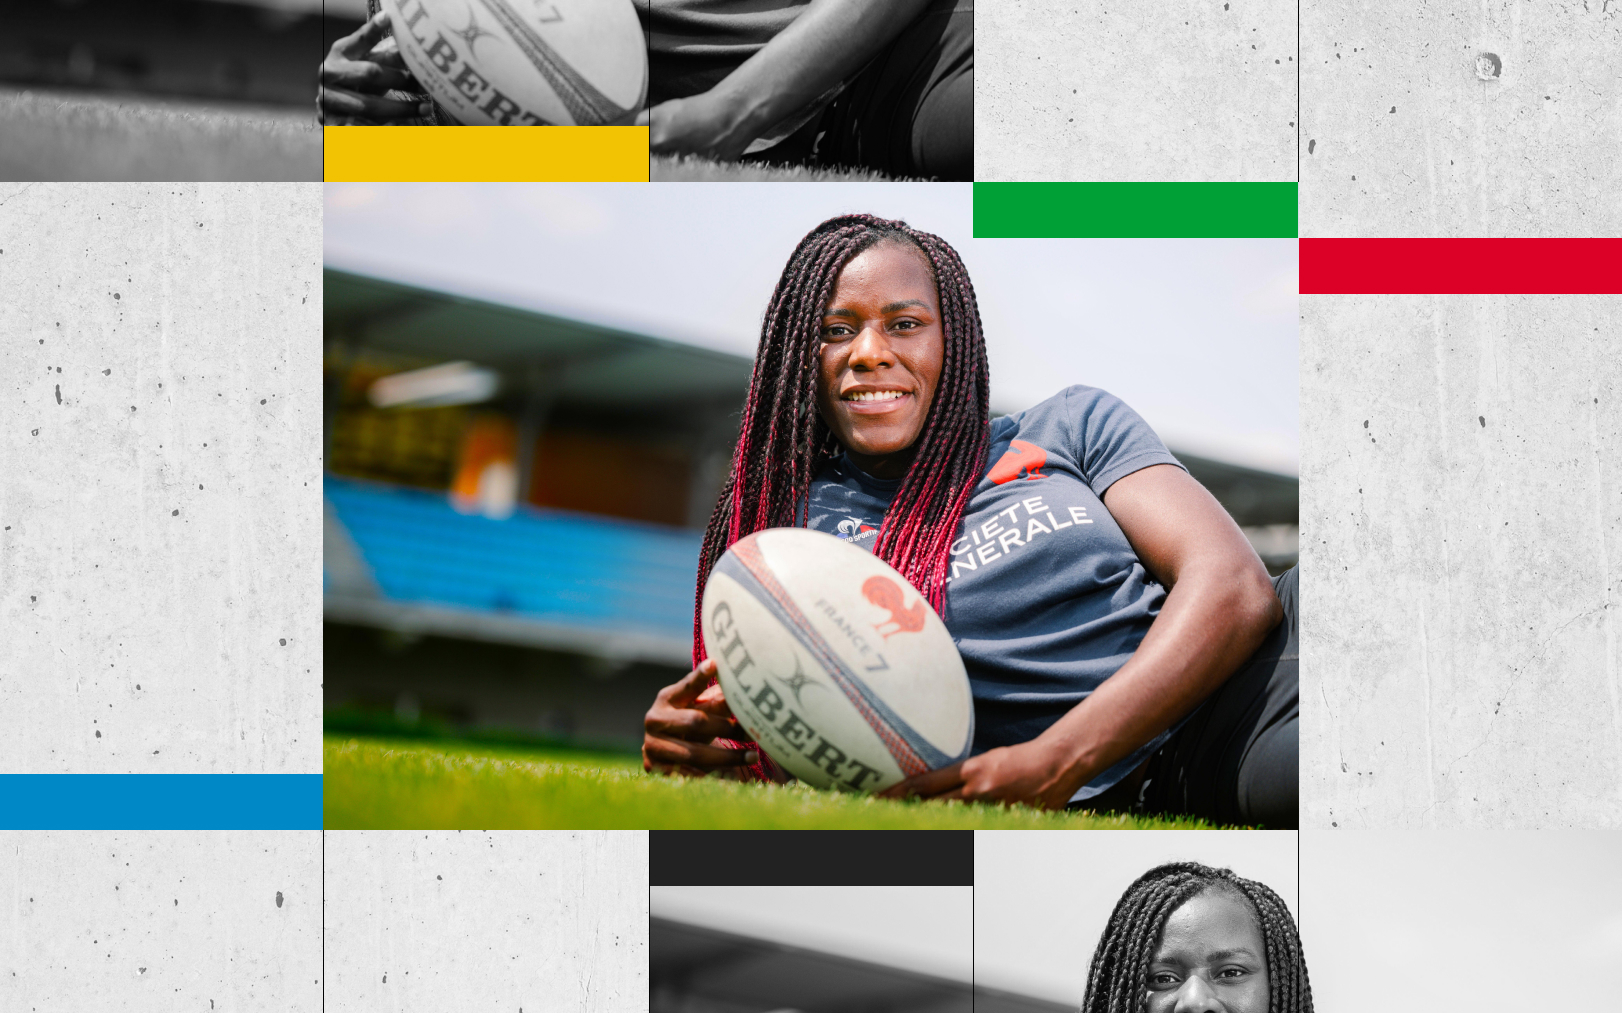 Séraphine Okemba et les Bleues courent après une première victoire sur le circuit mondial pour le rugby à sept féminin français. Le Parisien DA - LP/Arnaud Dumontier